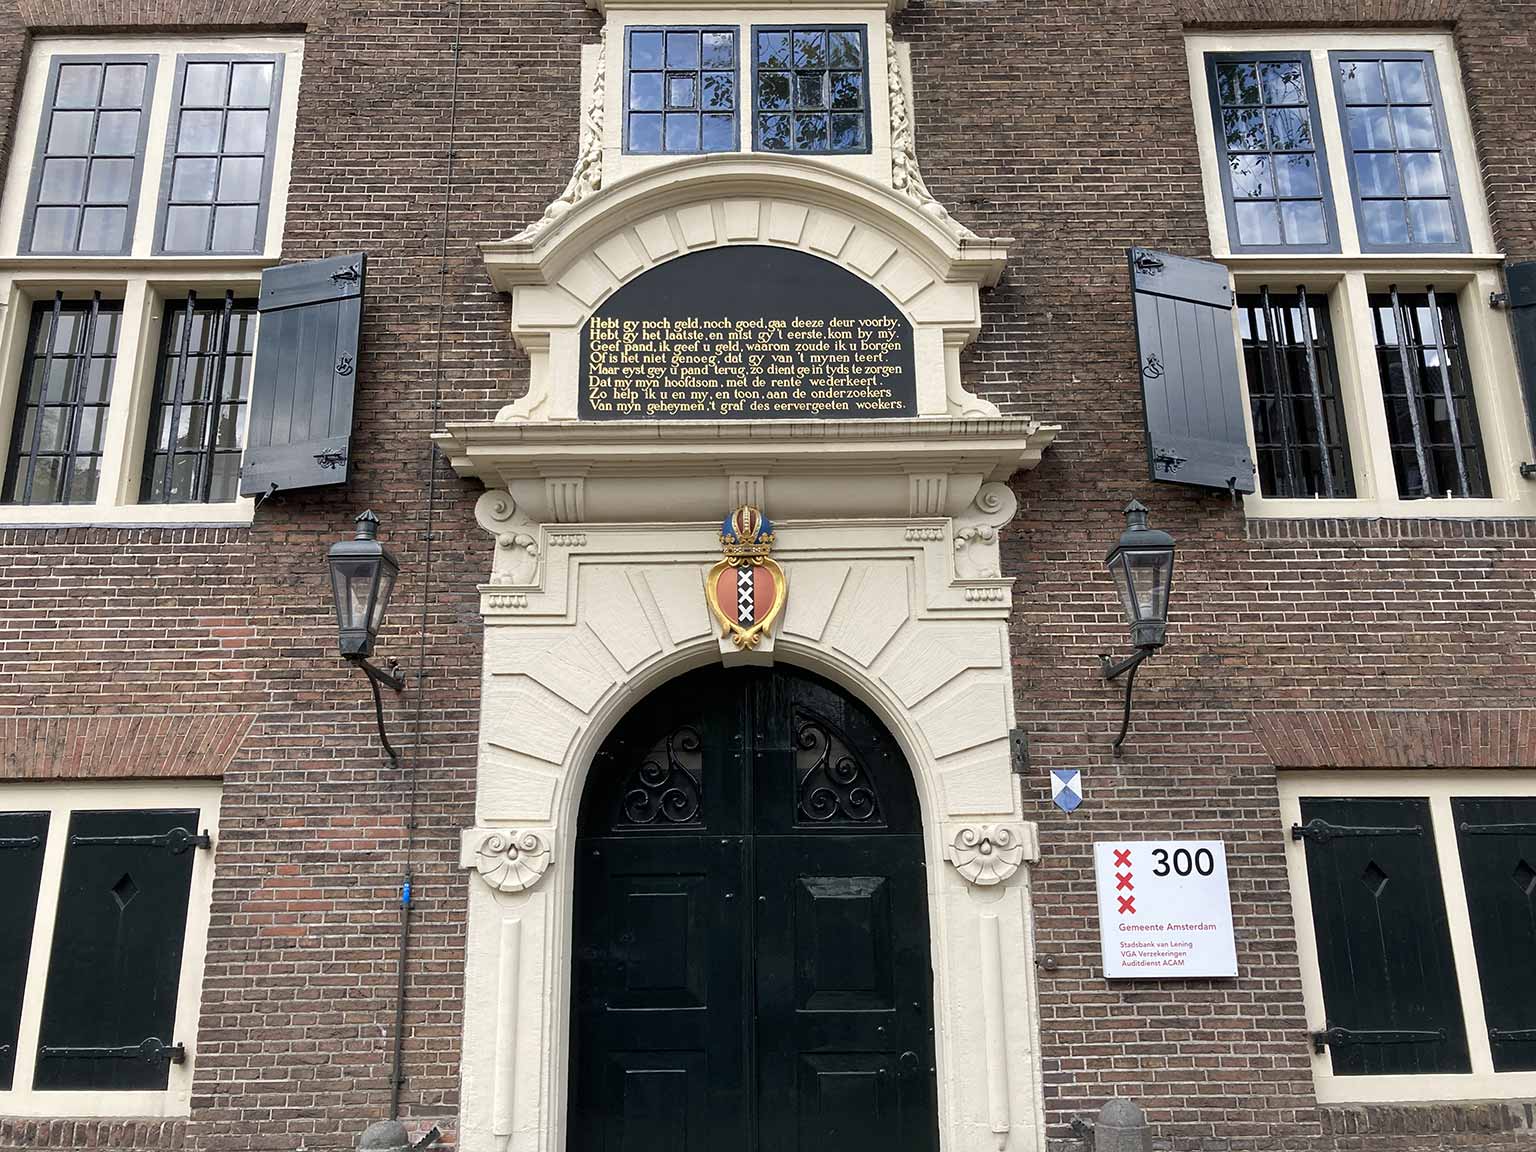 De deur op de Oudezijds Voorburgwal 300, Amsterdam, met de tekst uit 1740